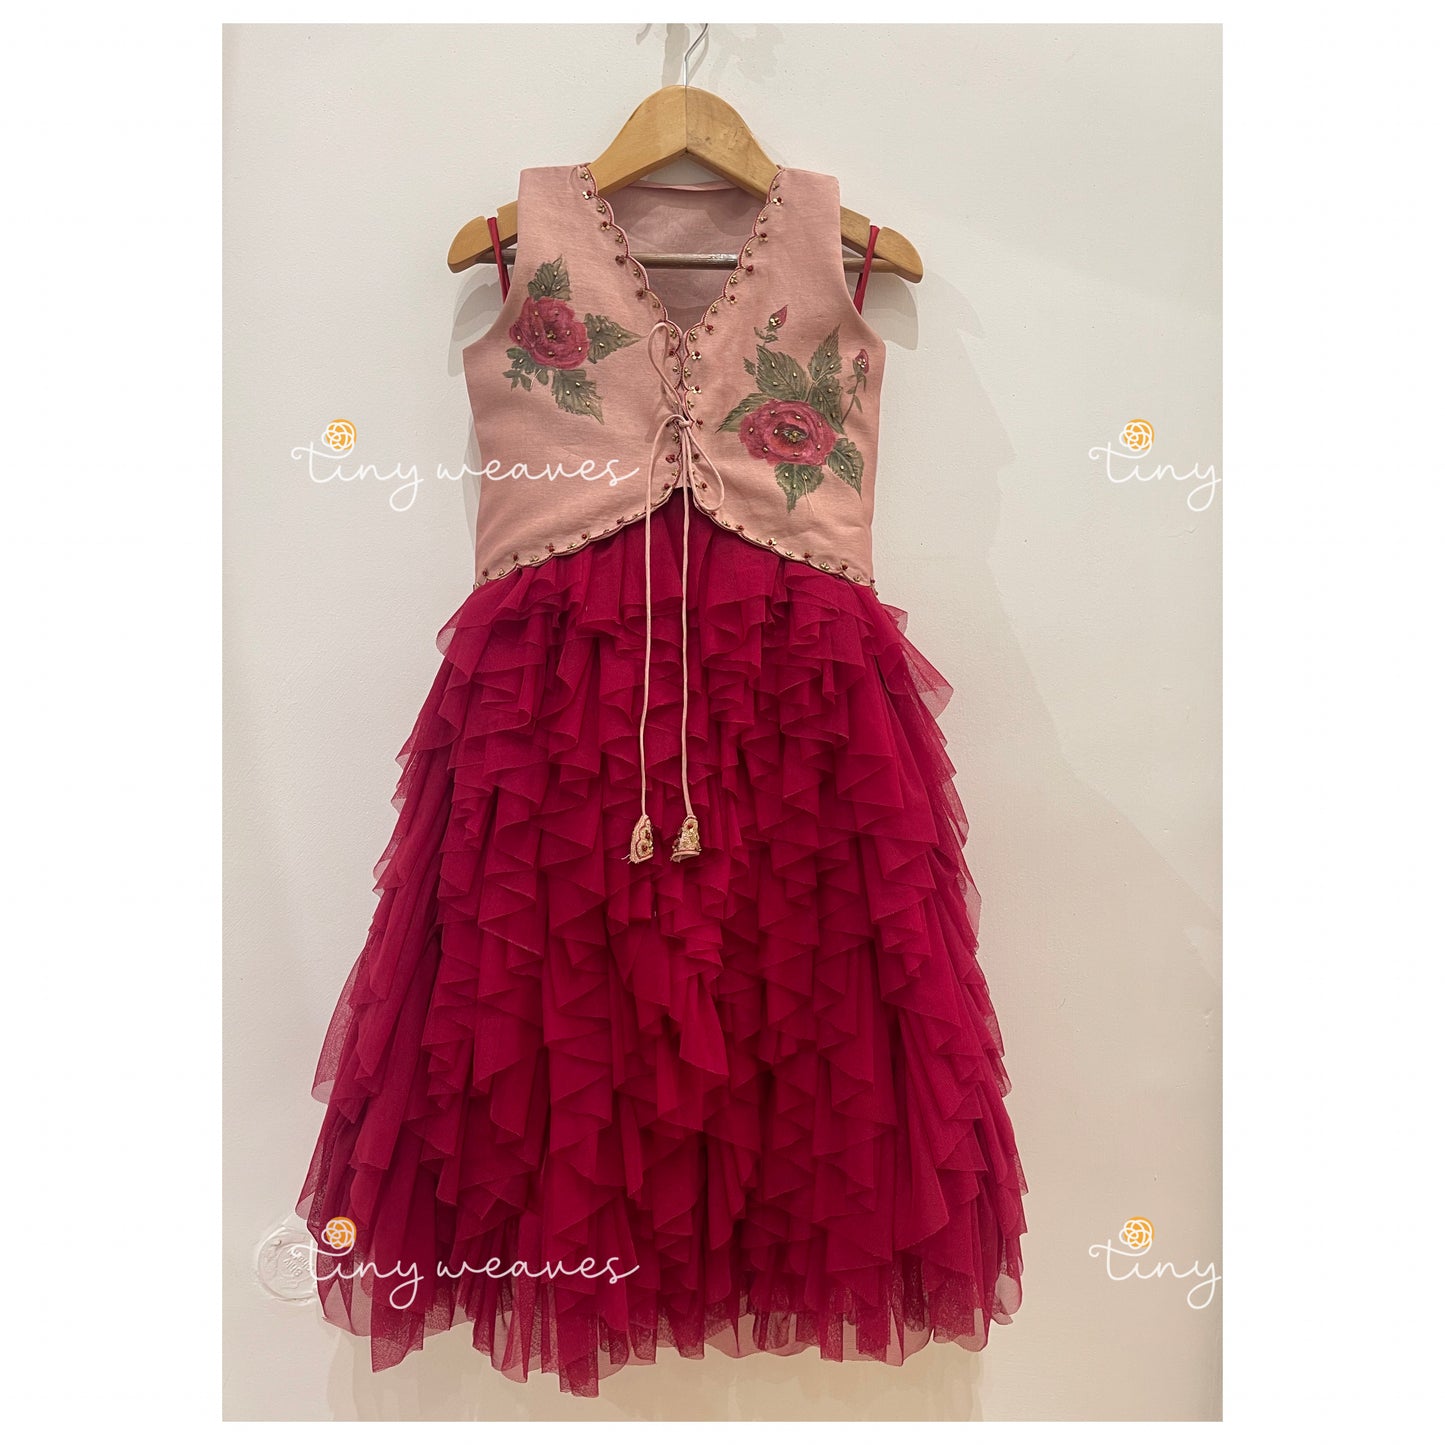 The tulle rose skirt set